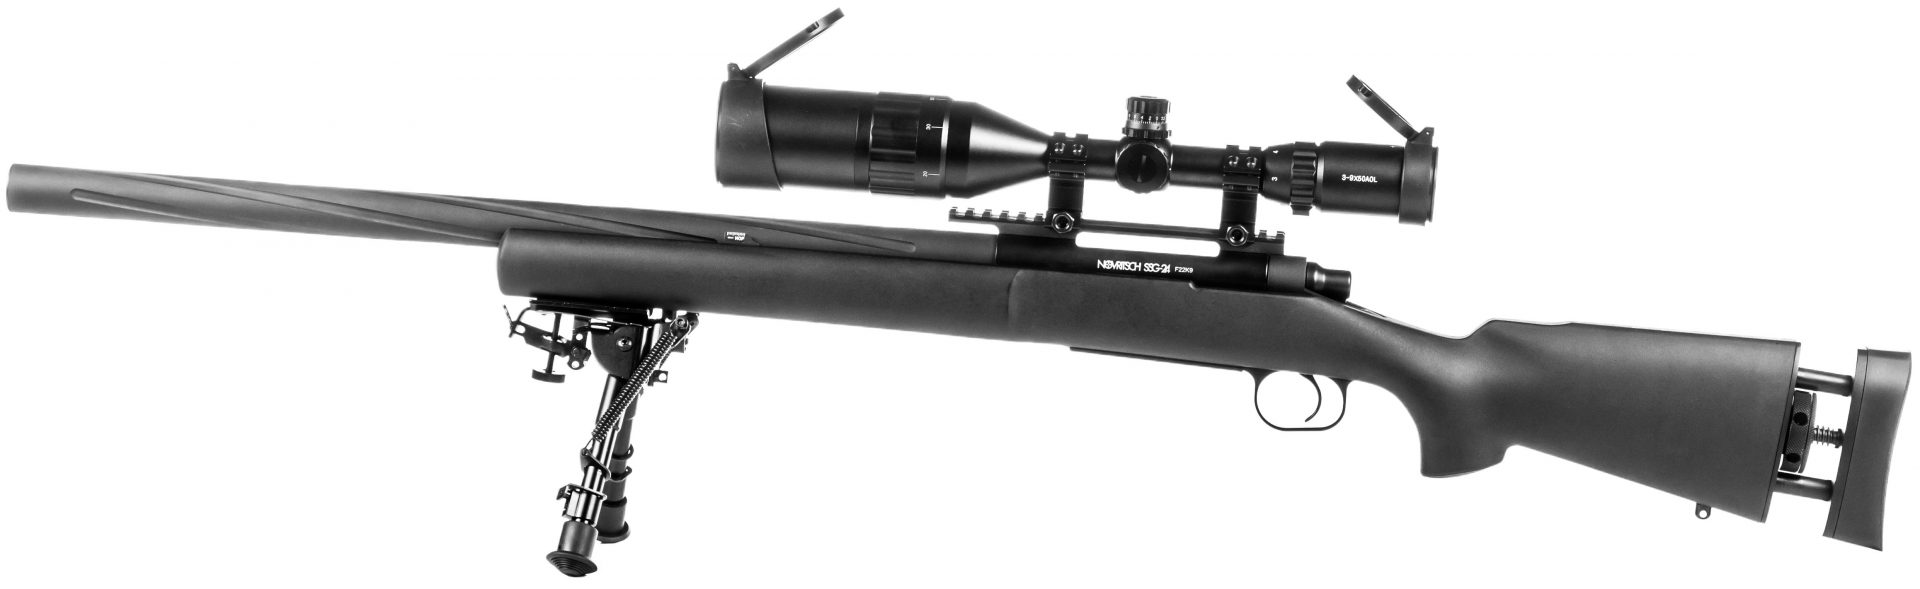 Sniper Rifles - Novritsch